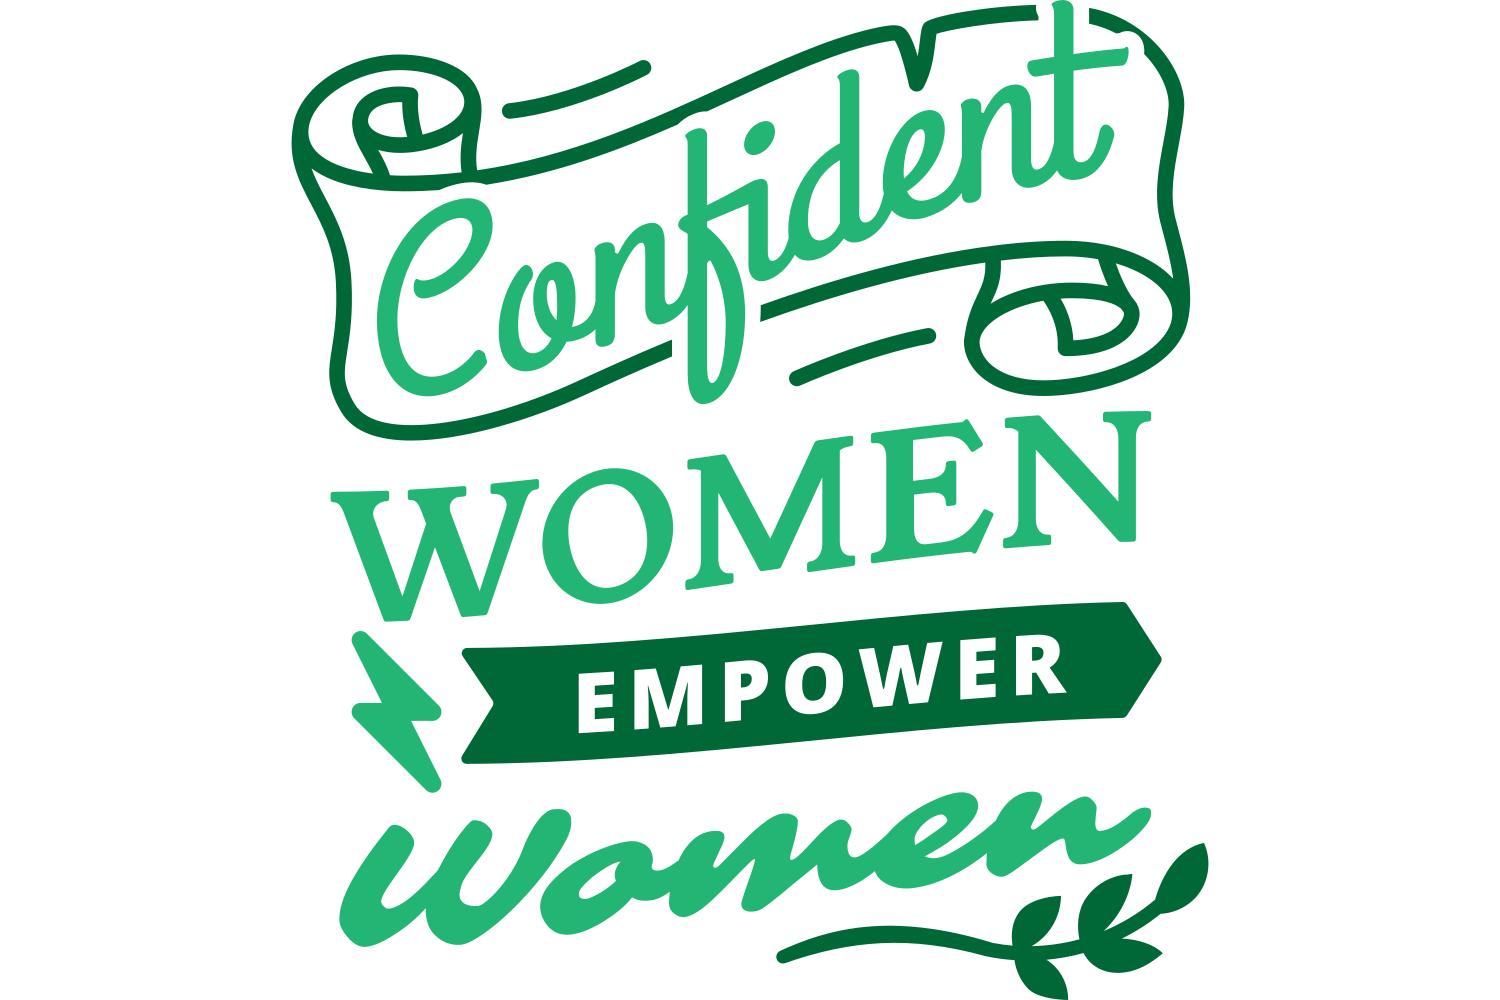 Confident Women Empower Women